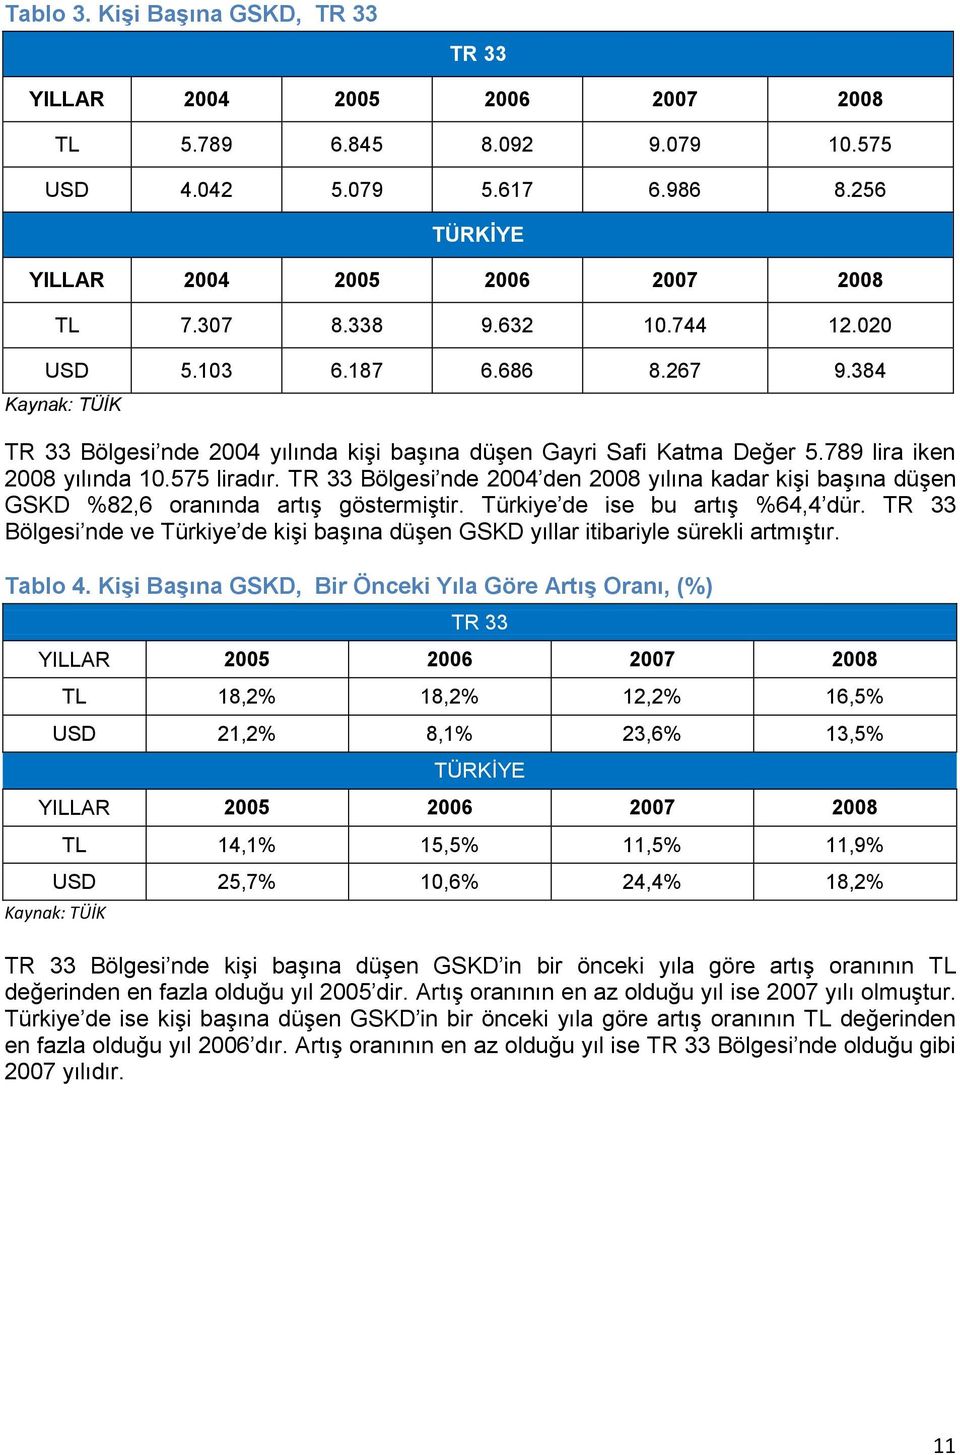 TR 33 Bölgesi nde 2004 den 2008 yılına kadar kişi başına düşen GSKD %82,6 oranında artış göstermiştir. Türkiye de ise bu artış %64,4 dür.